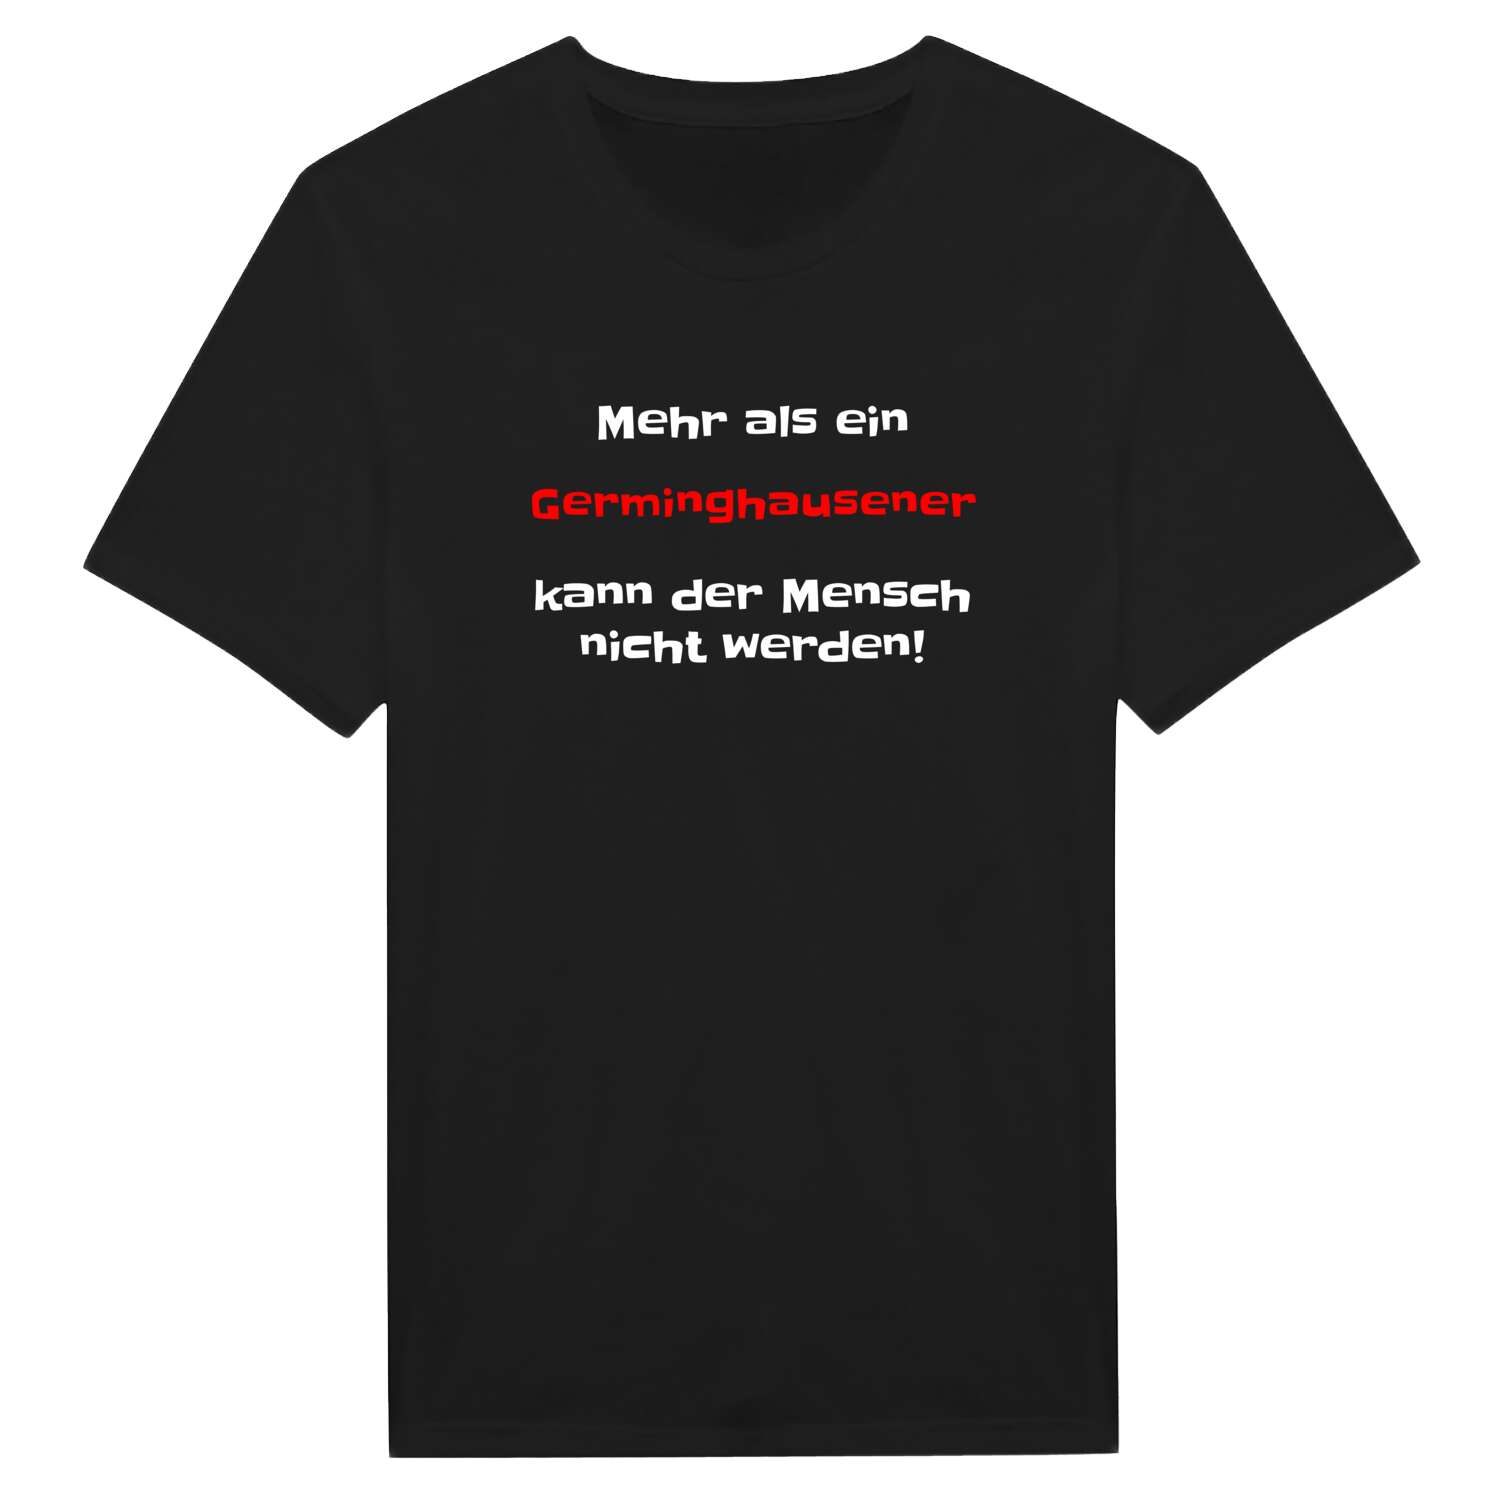 Germinghausen T-Shirt »Mehr als ein«